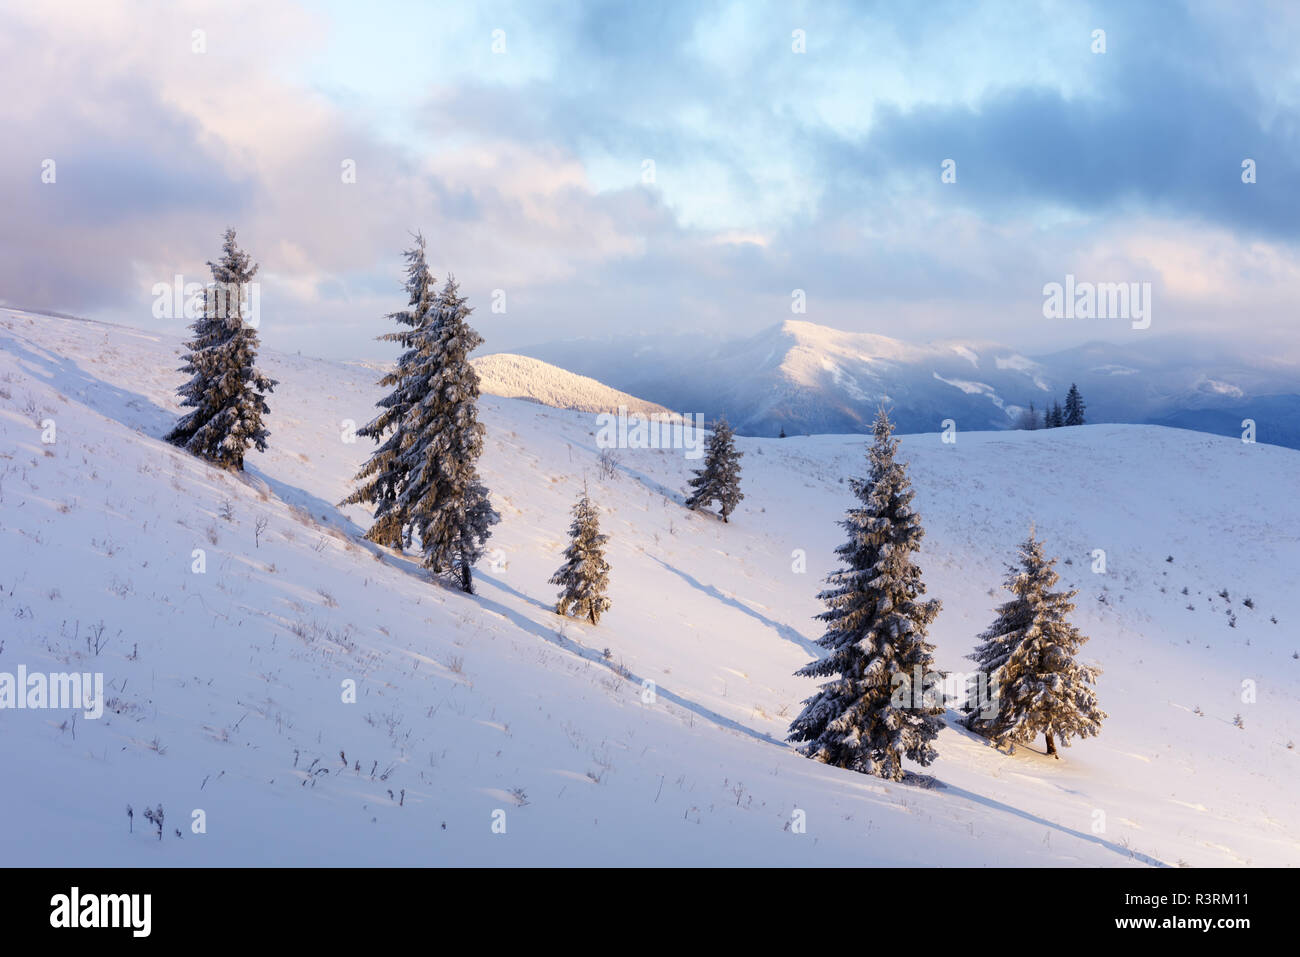 Fantastic orange paisaje invernal en montañas nevadas iluminado por la luz solar. Dramática escena invernal con árboles nevados. Concepto de vacaciones de Navidad. Foto de stock